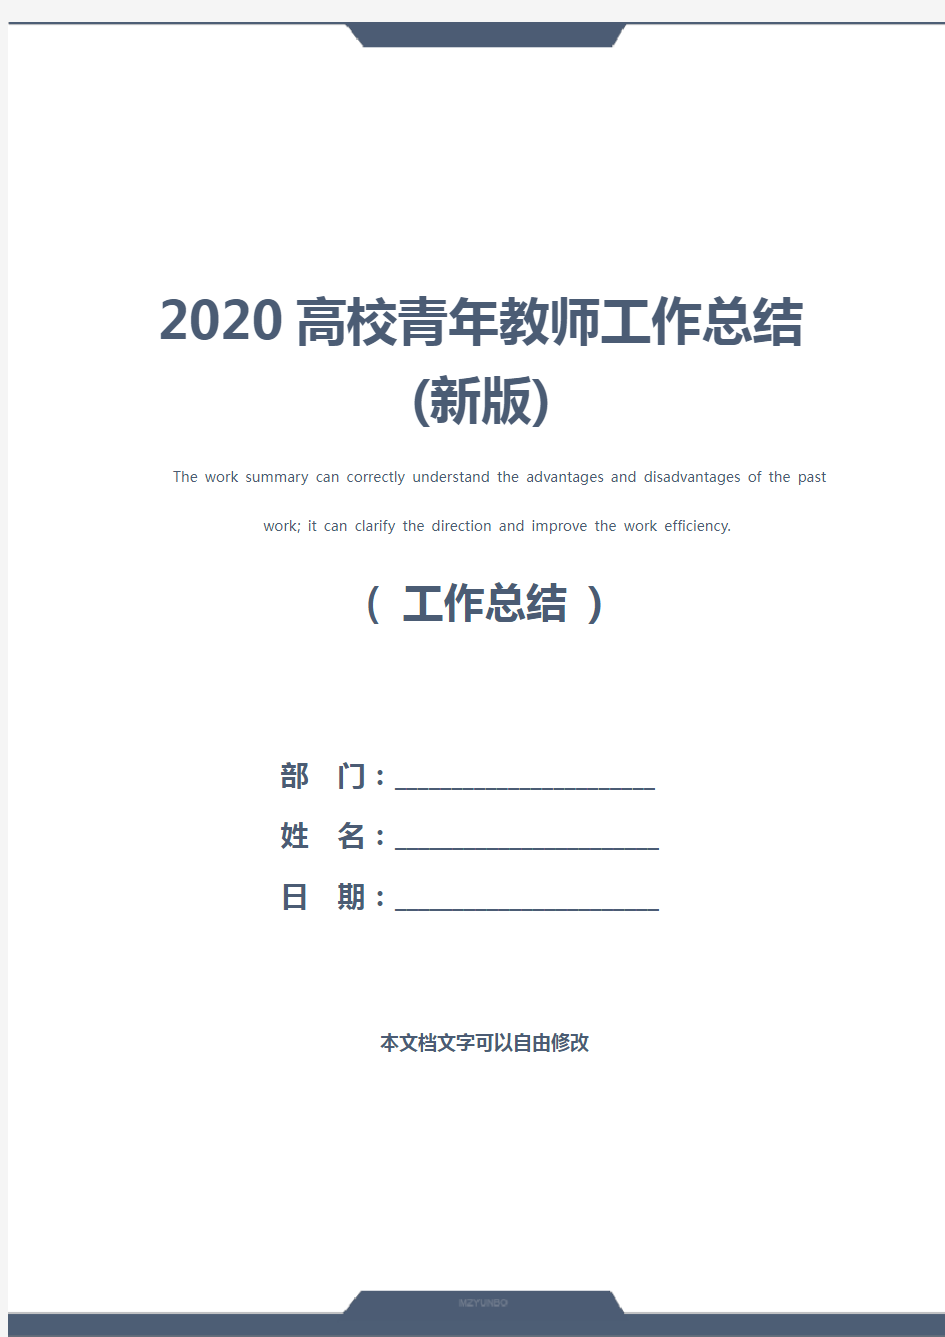 2020高校青年教师工作总结(新版)